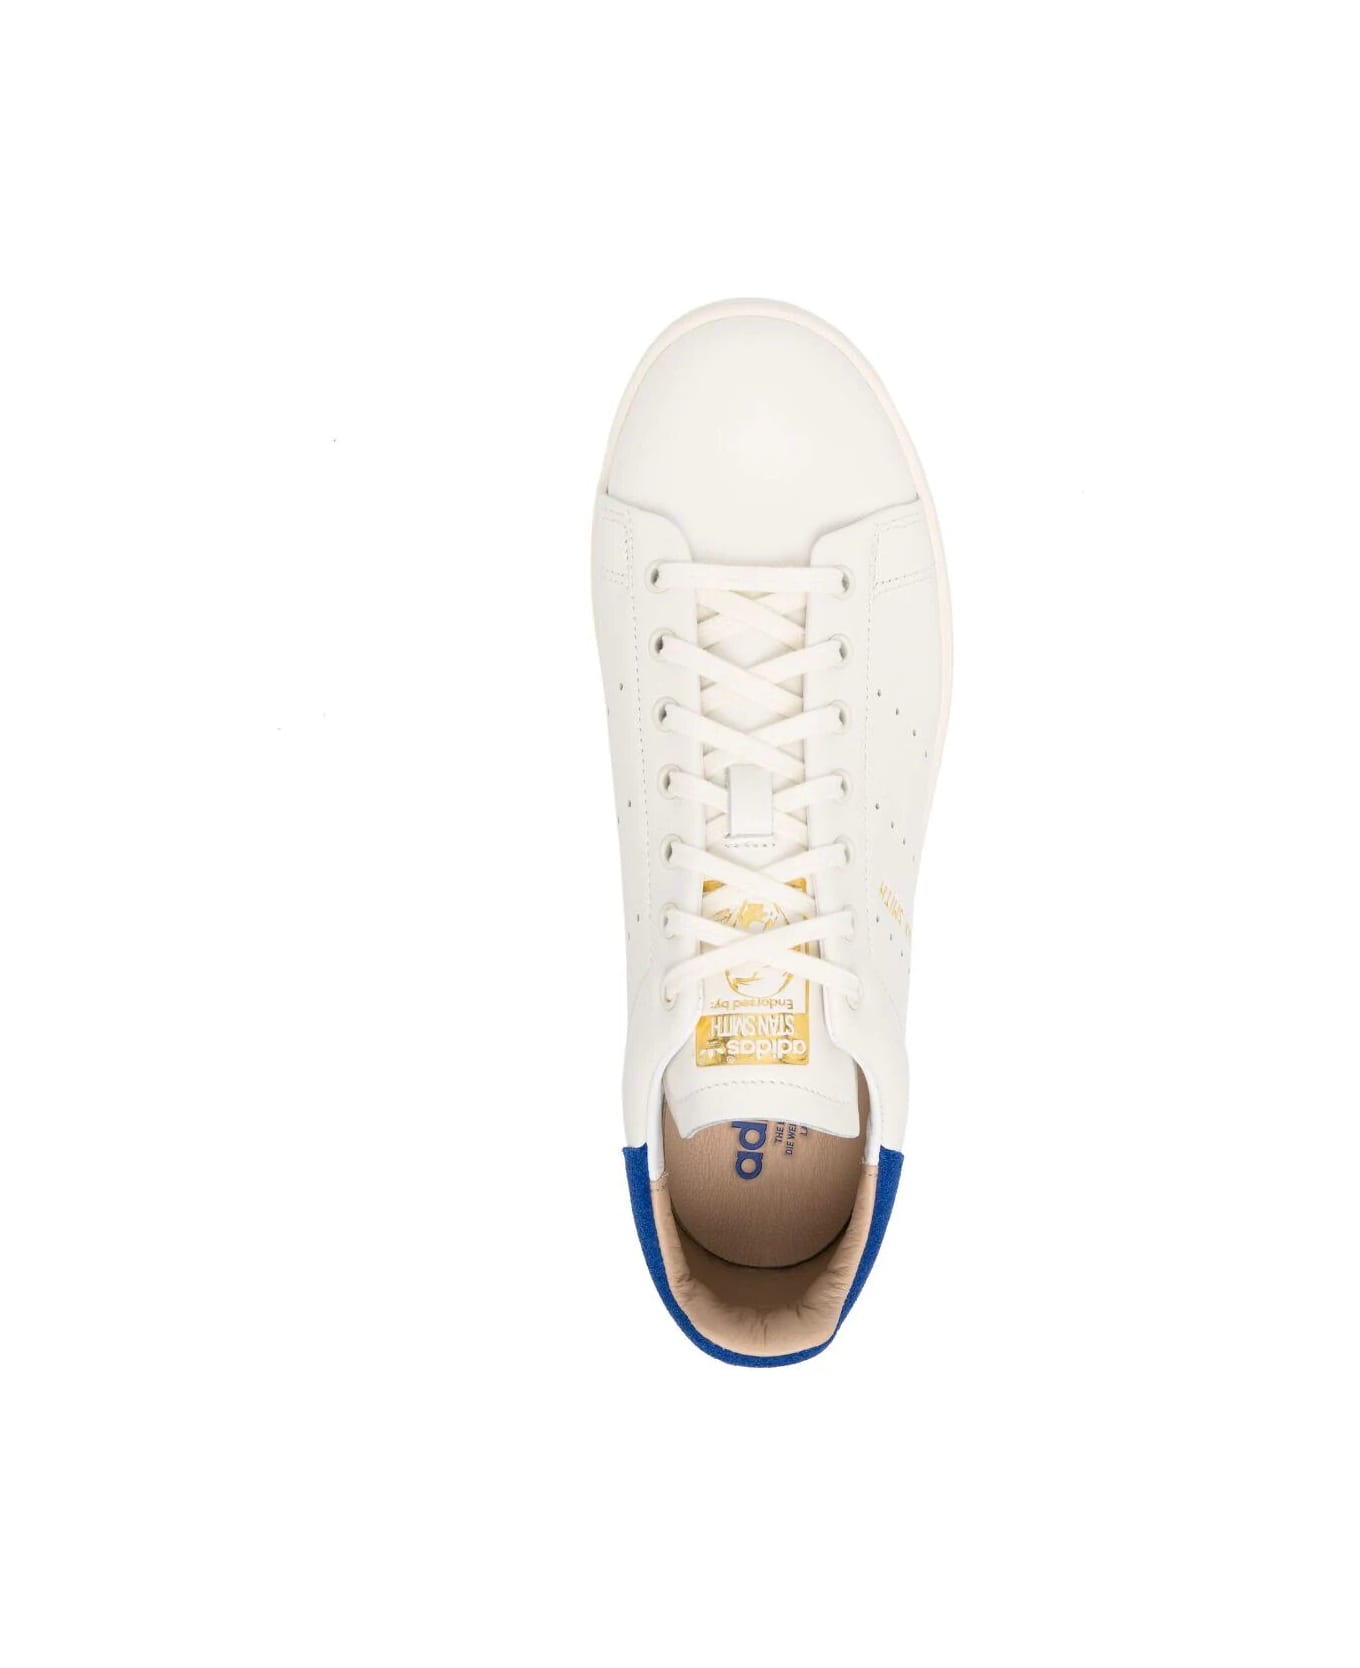 Adidas Originals Stan Smith Lux Sneakers - Owhite Cwhite Royblu